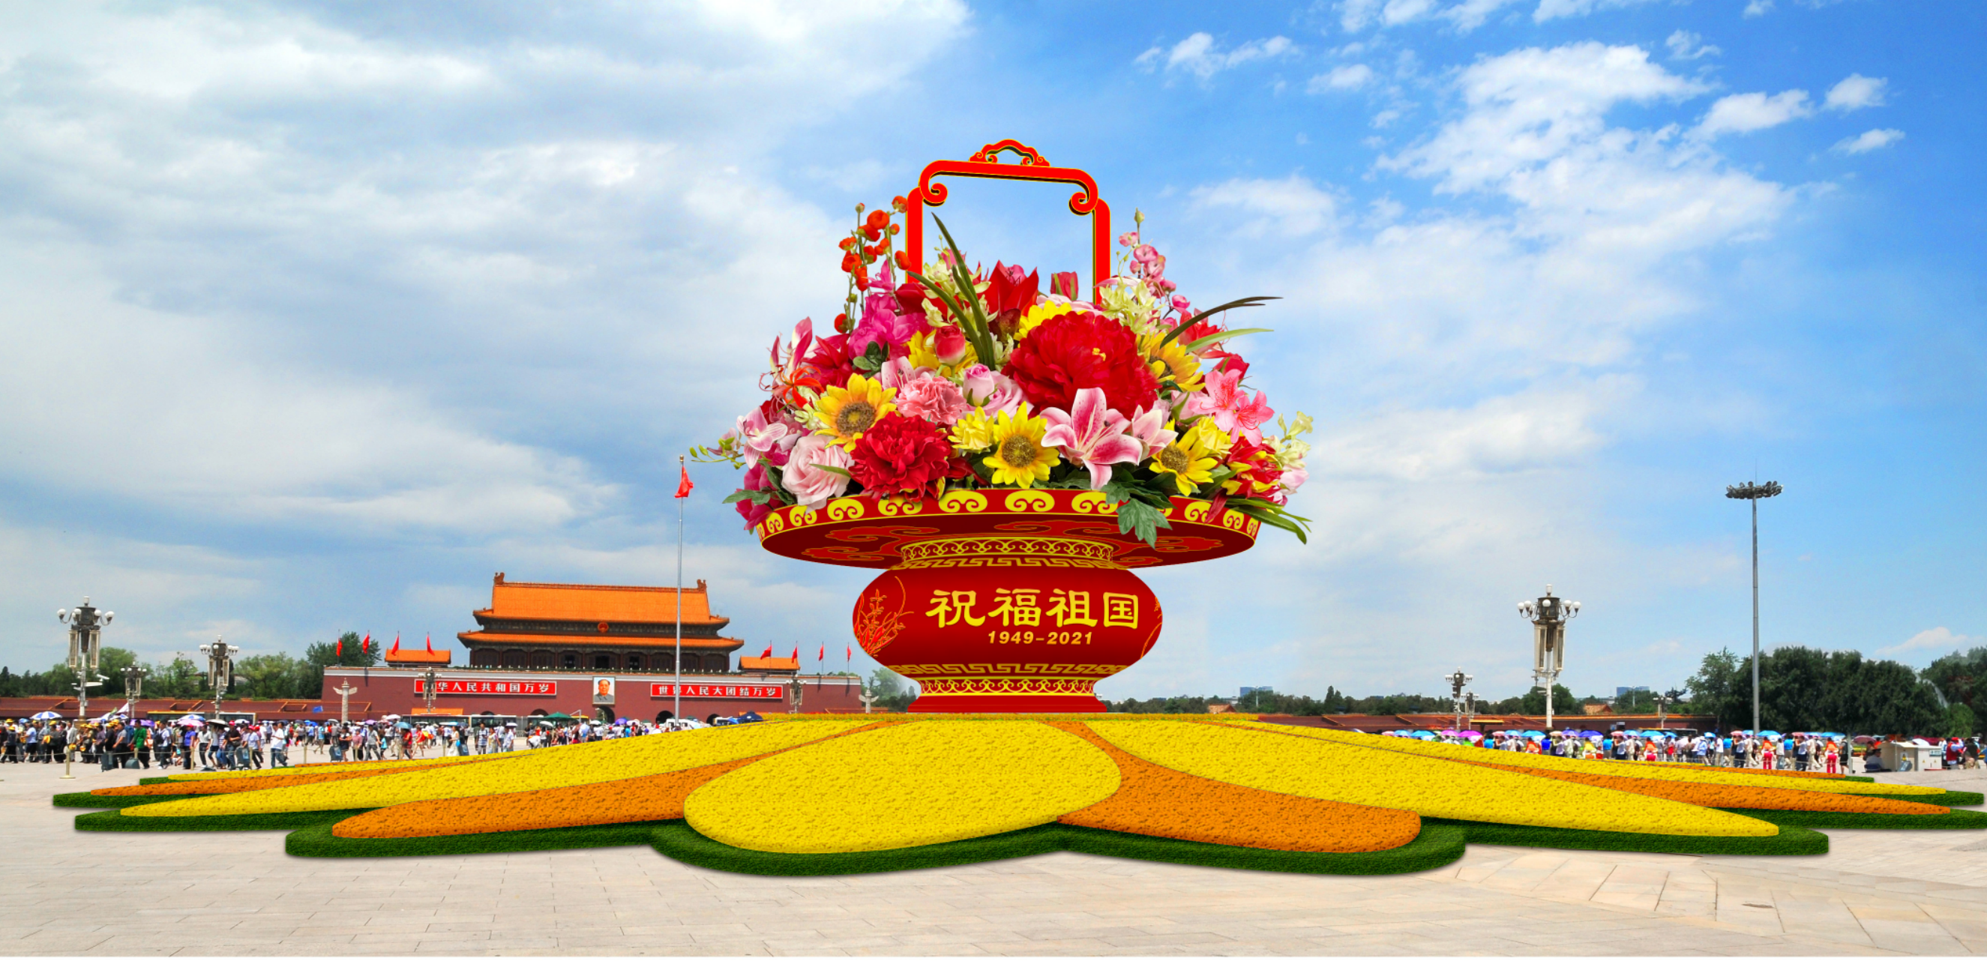 国庆花坛方案公布,天安门广场布置"祝福祖国"巨型花篮